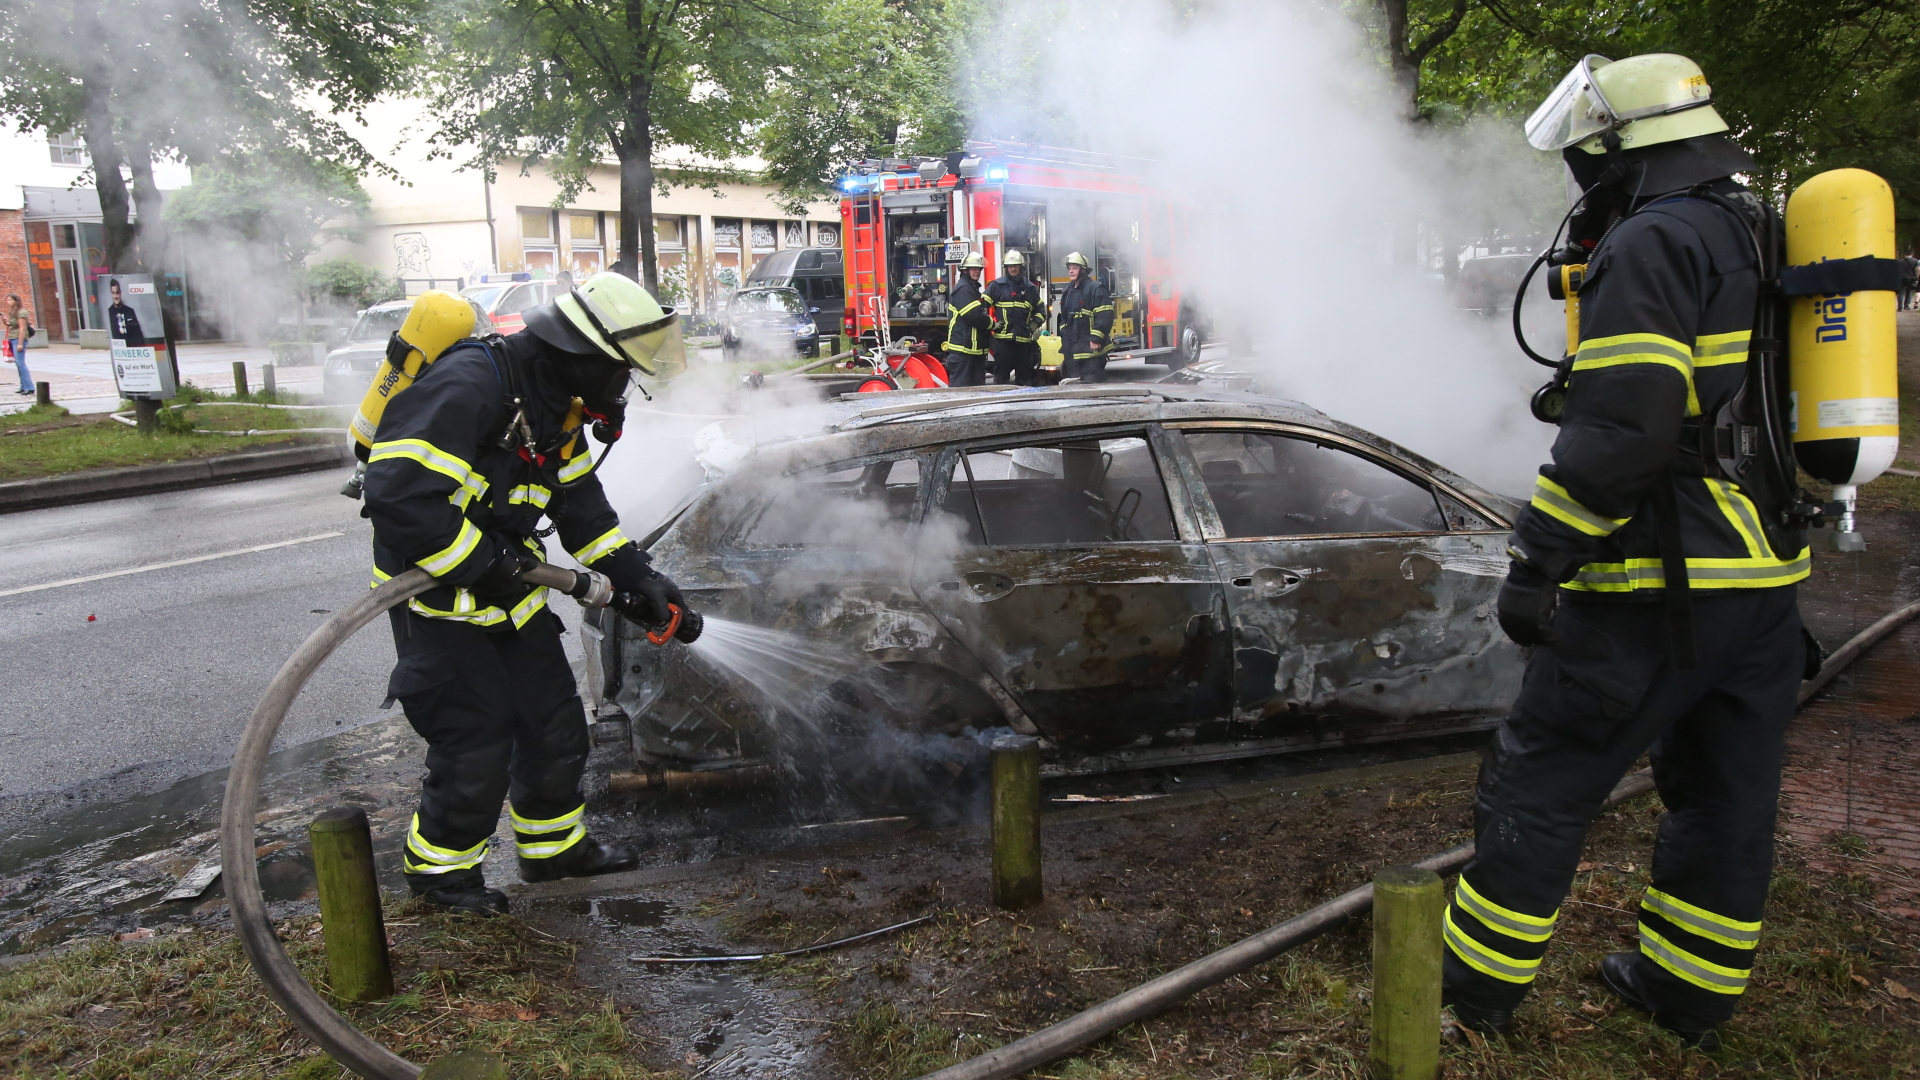  Feuerwehrleute löschen in Altona ein brennendes Auto.  | dpa